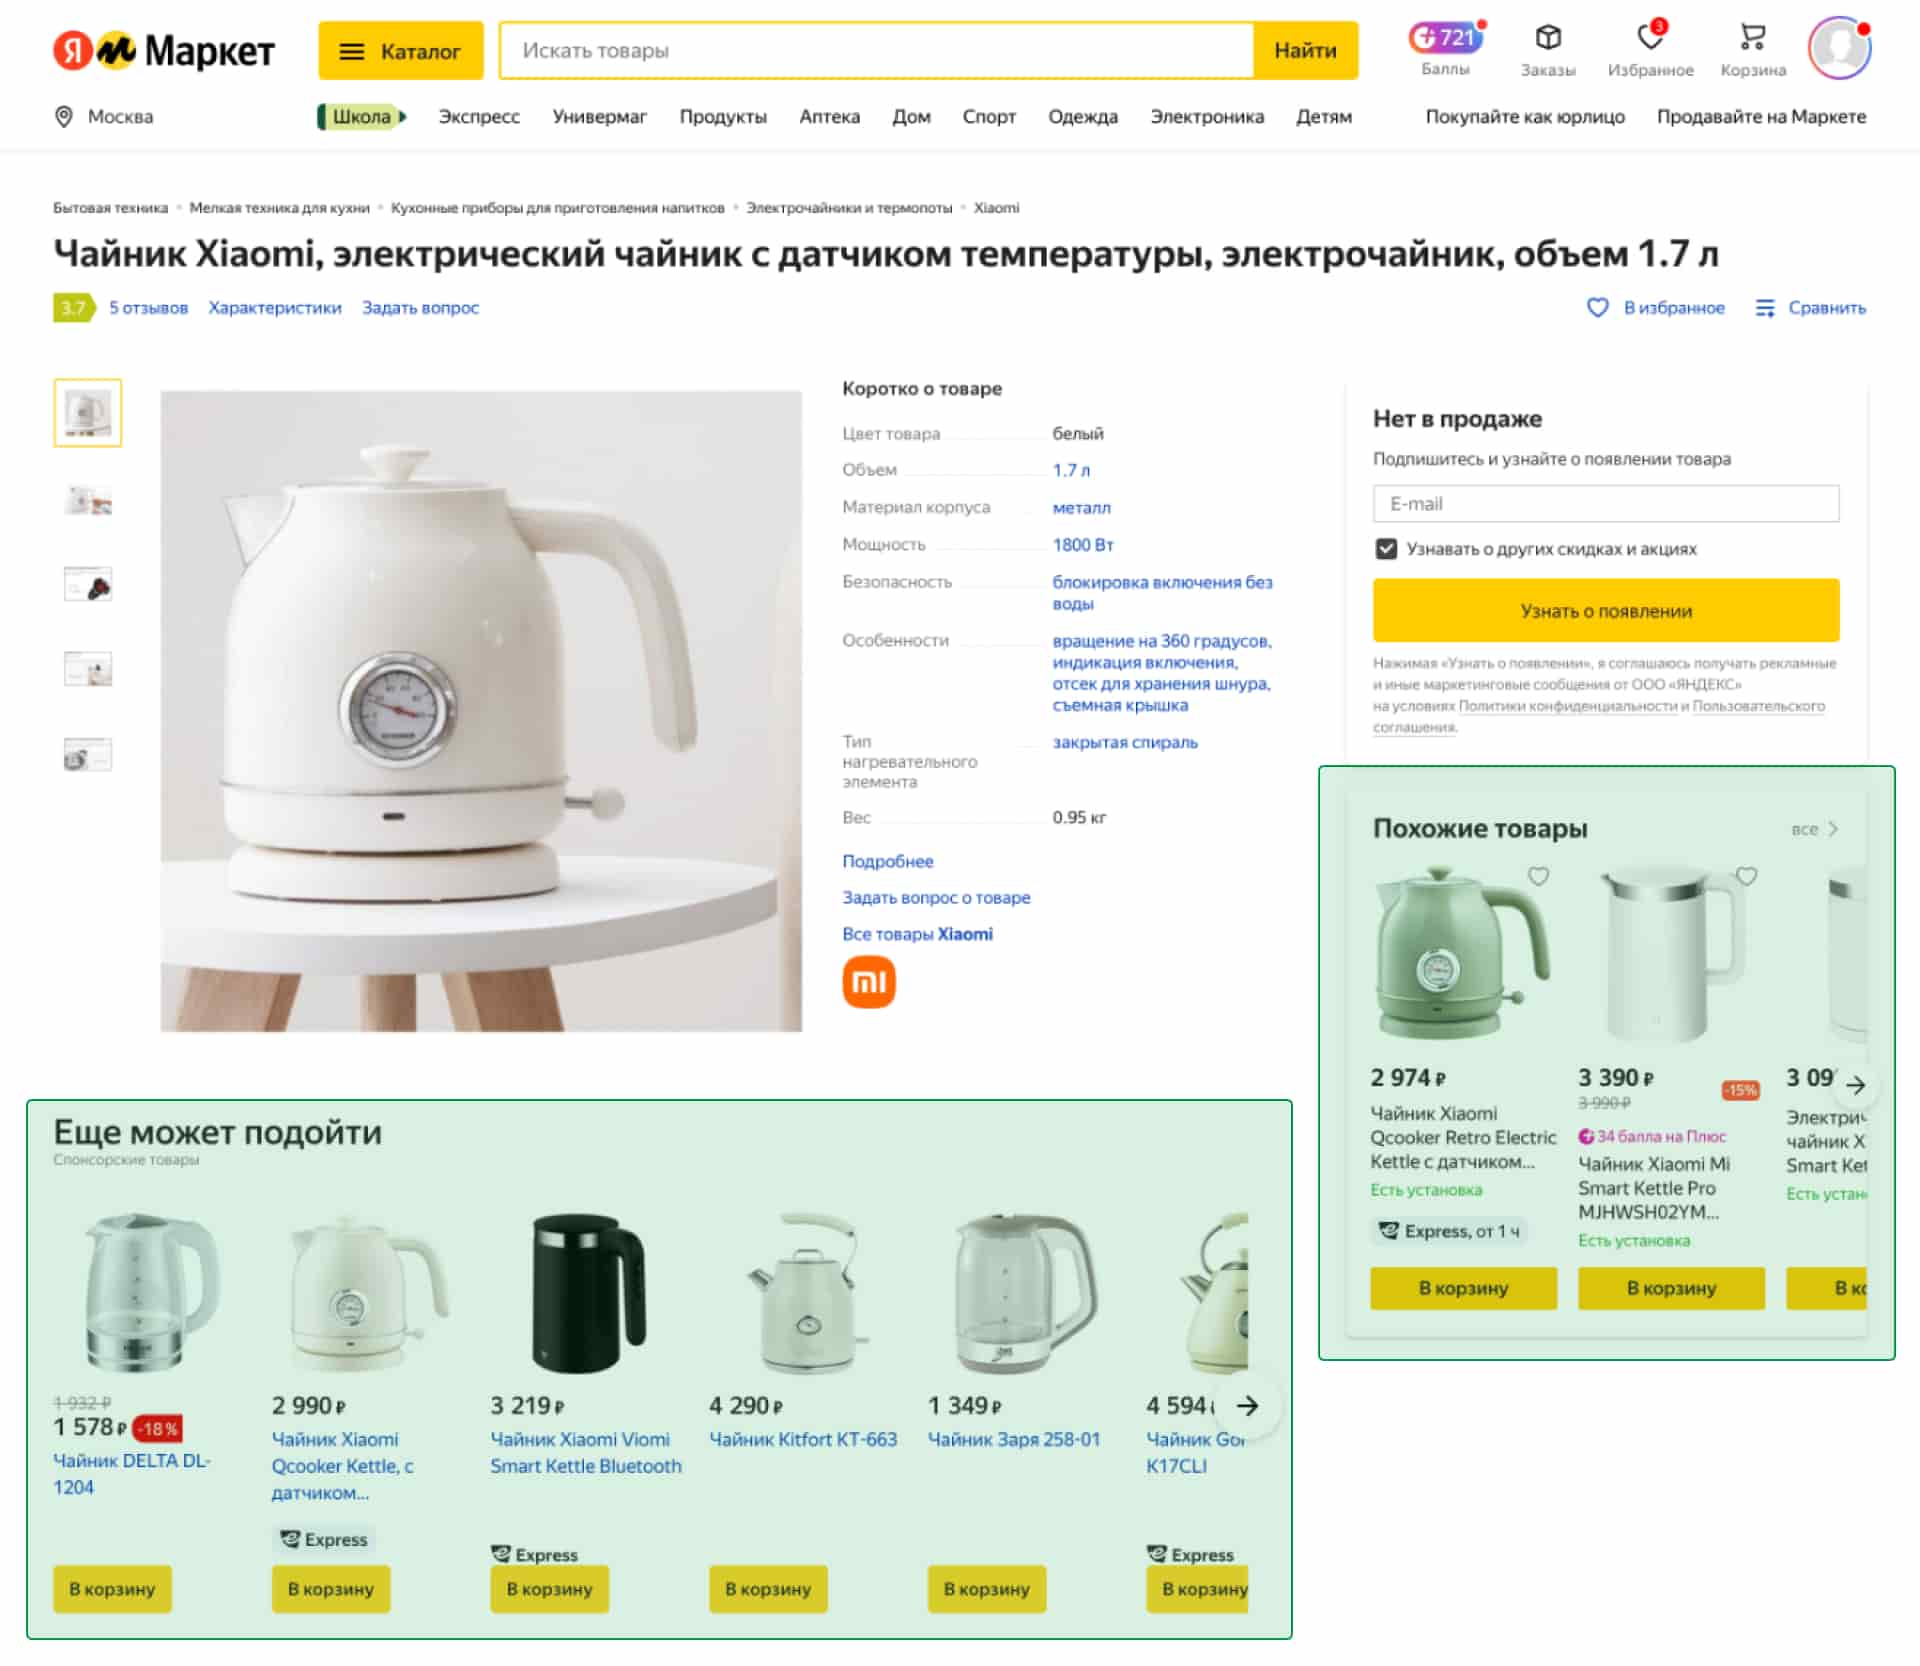 Яндекс.Маркет предлагает два виджета